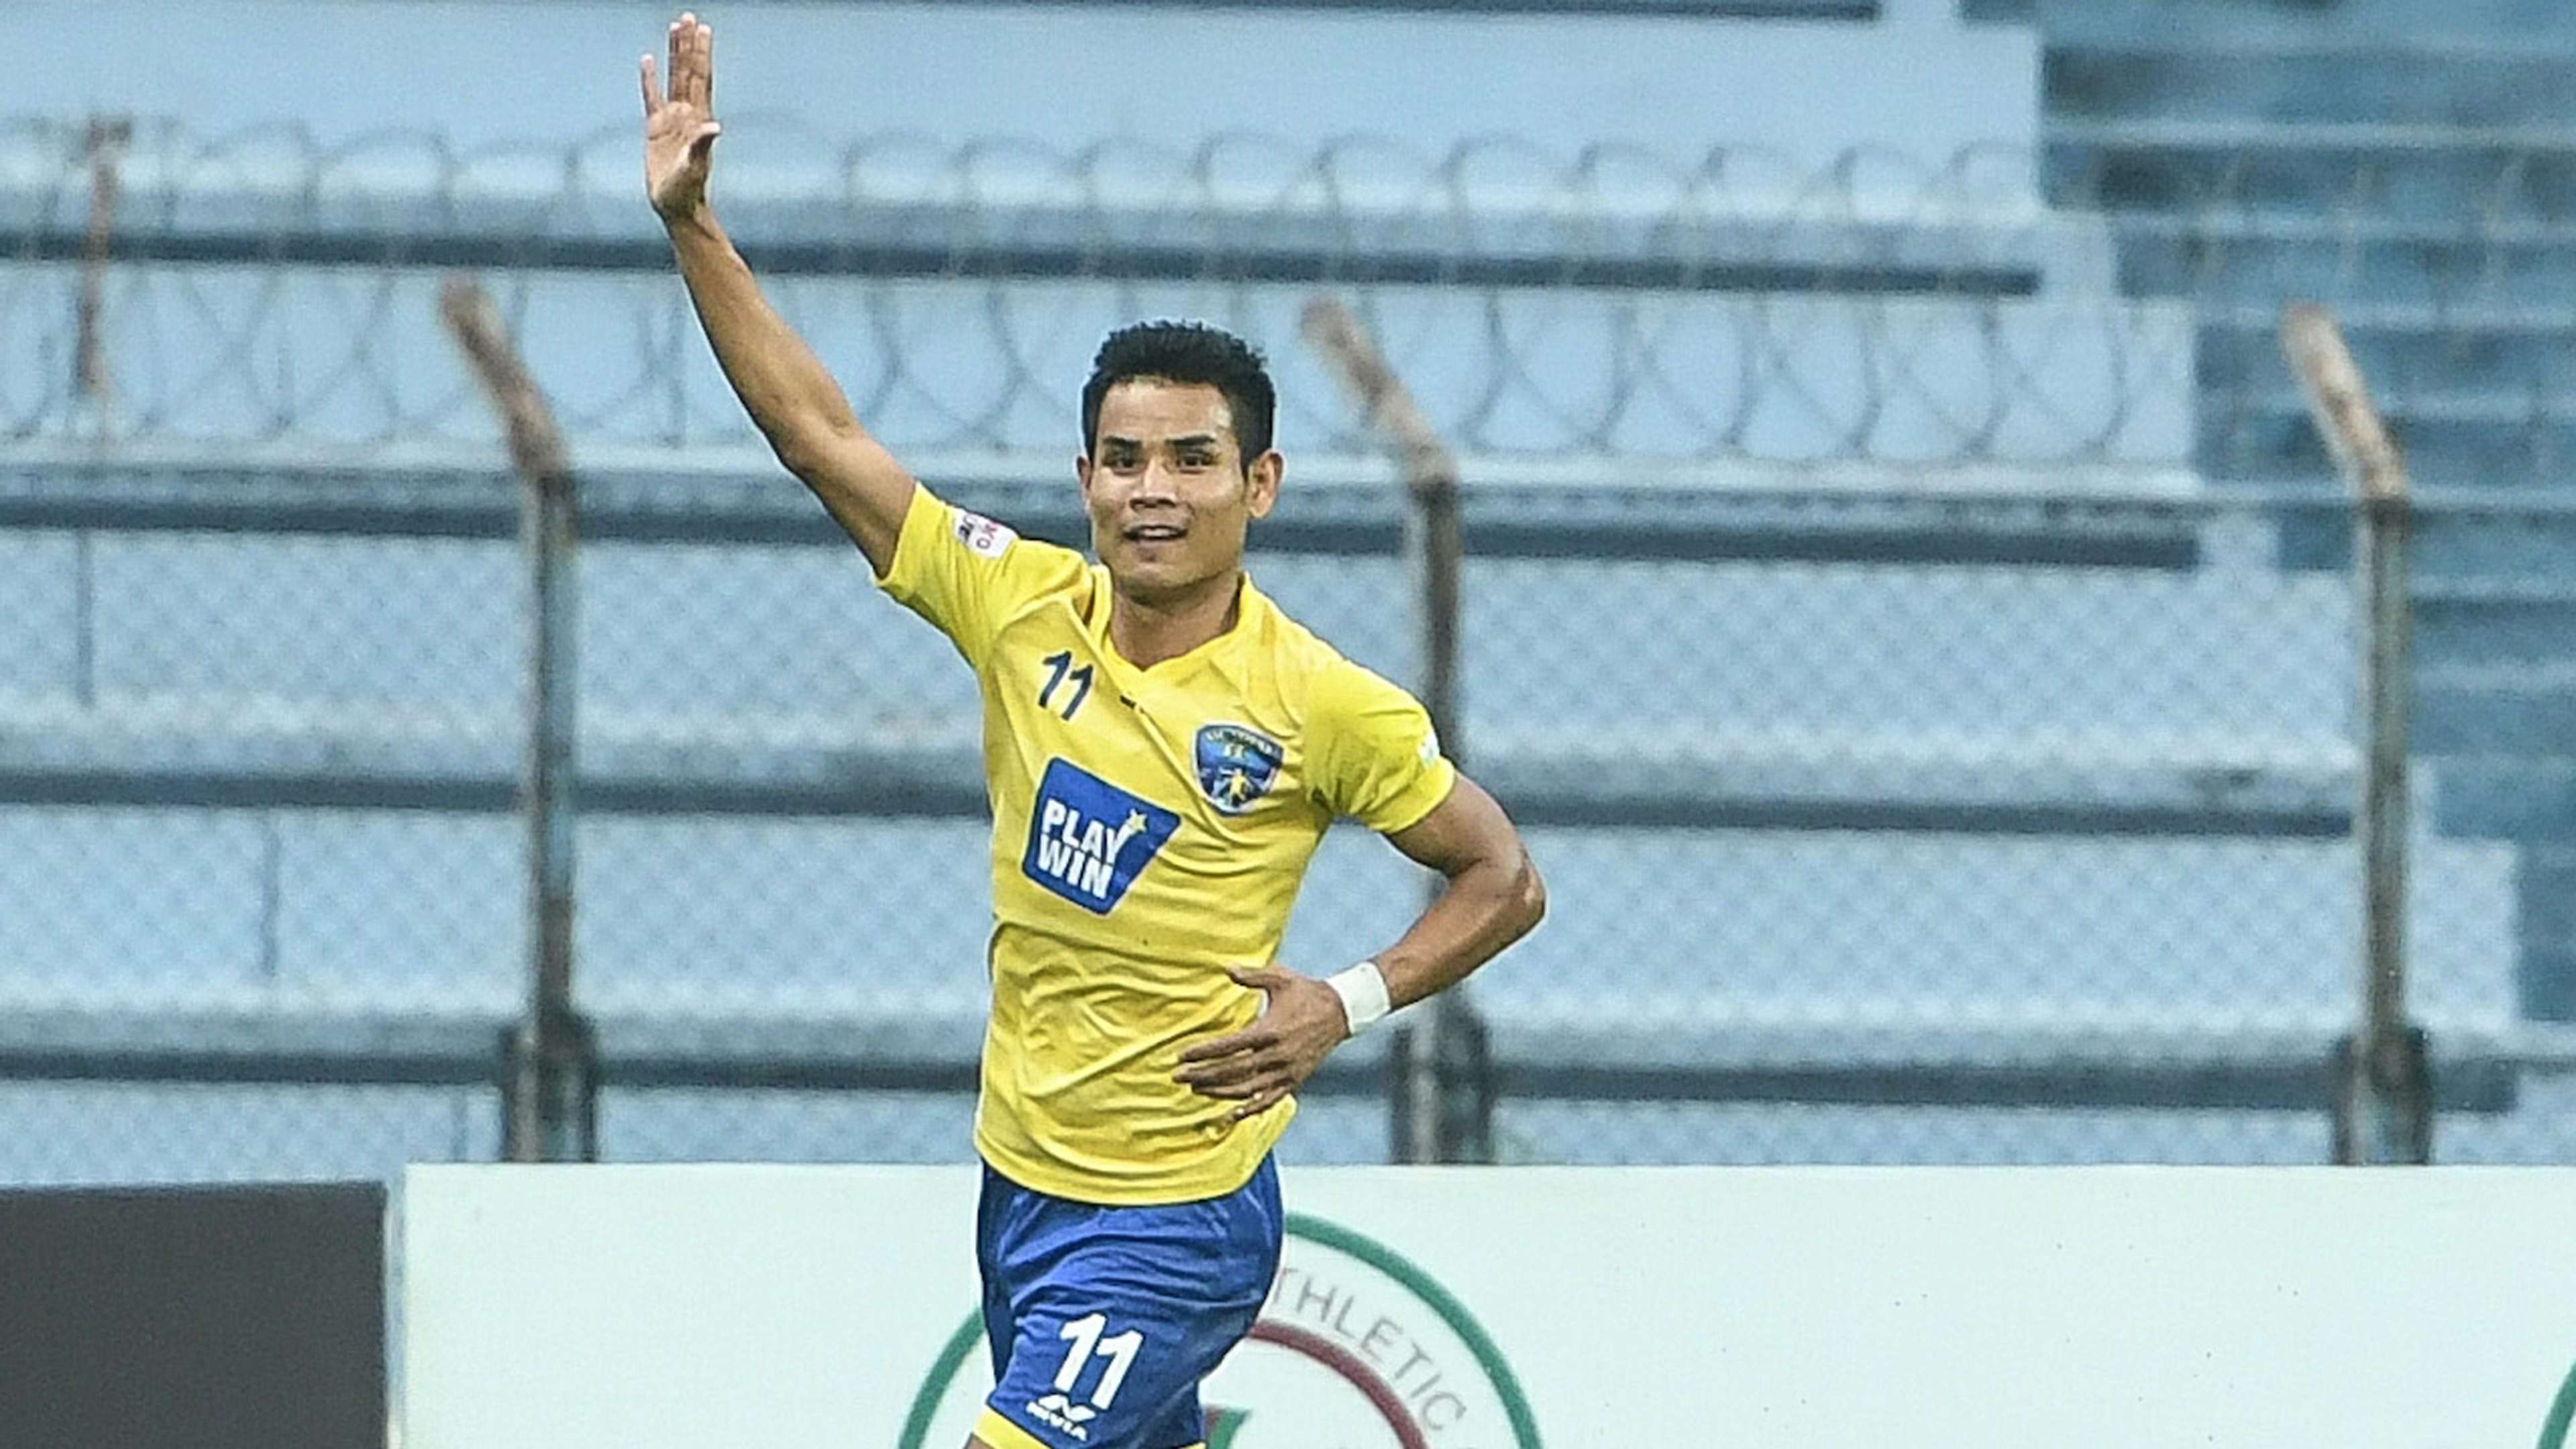 Thoi Singh Mohun Bagan Mumbai FC I-League 2017